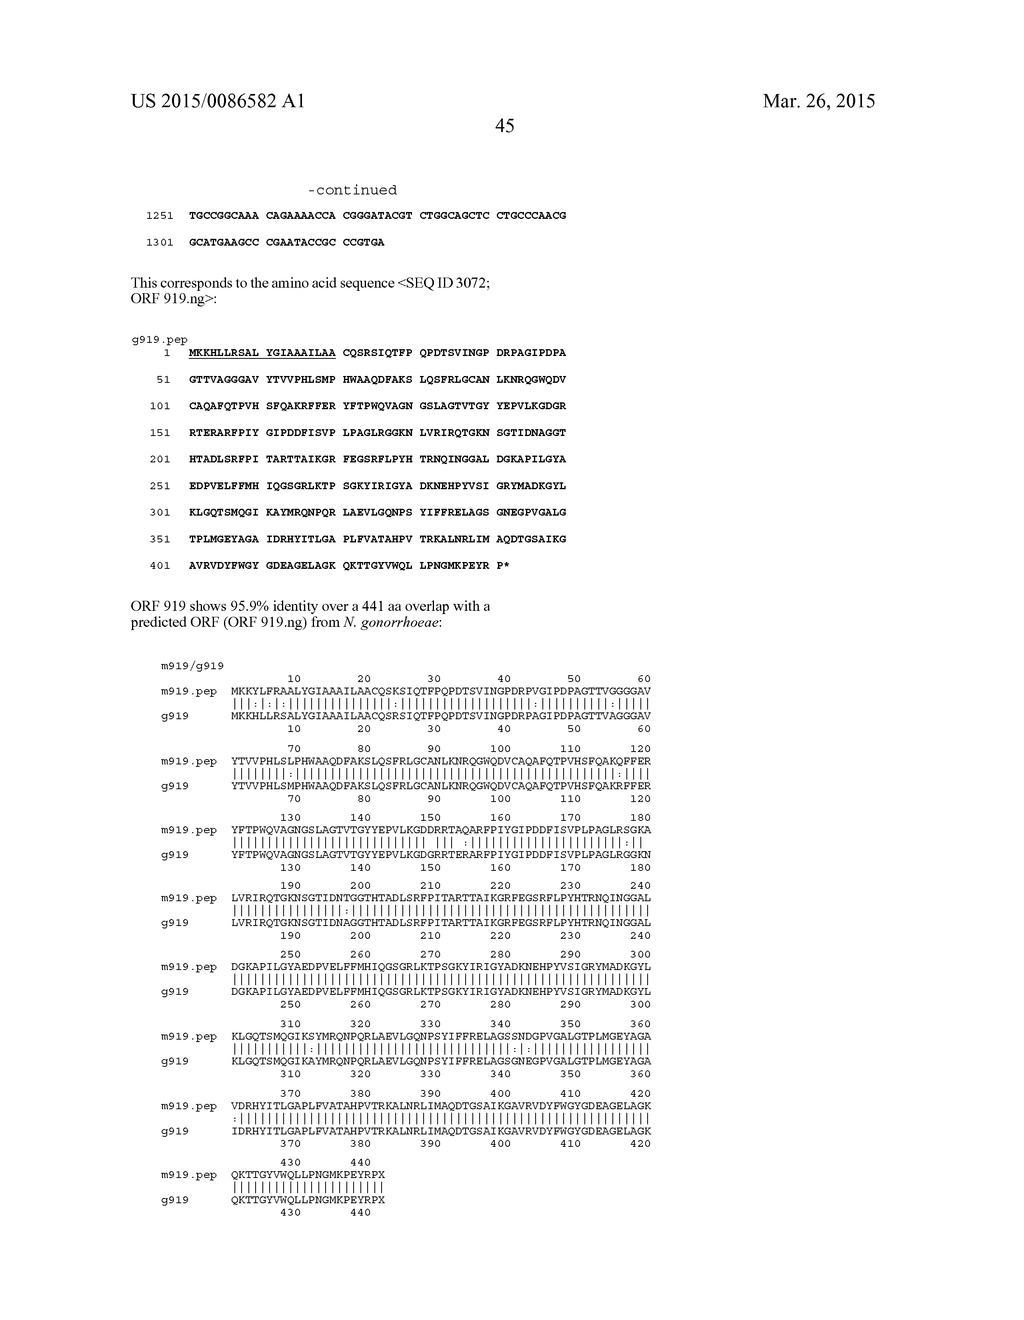 NEISSERIA MENINGITIDIS ANTIGENS AND COMPOSITIONS - diagram, schematic, and image 77